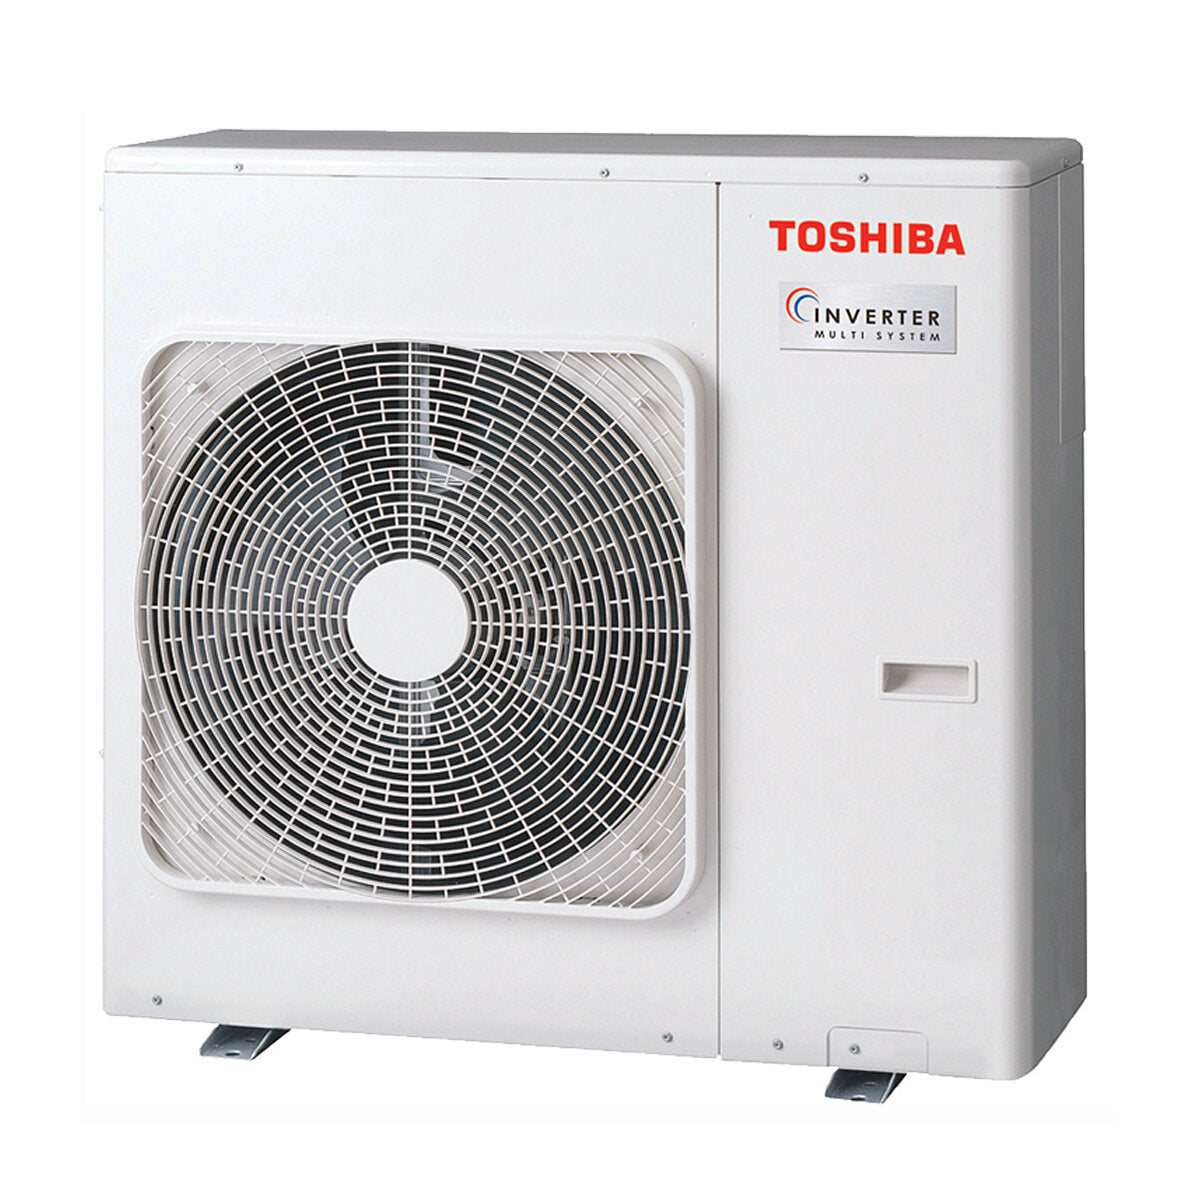 Klimaanlage Toshiba Console J2 Pentasplit 9000 + 9000 + 9000 + 12000 + 12000 BTU Inverter A++ Außengerät 10,0 kW